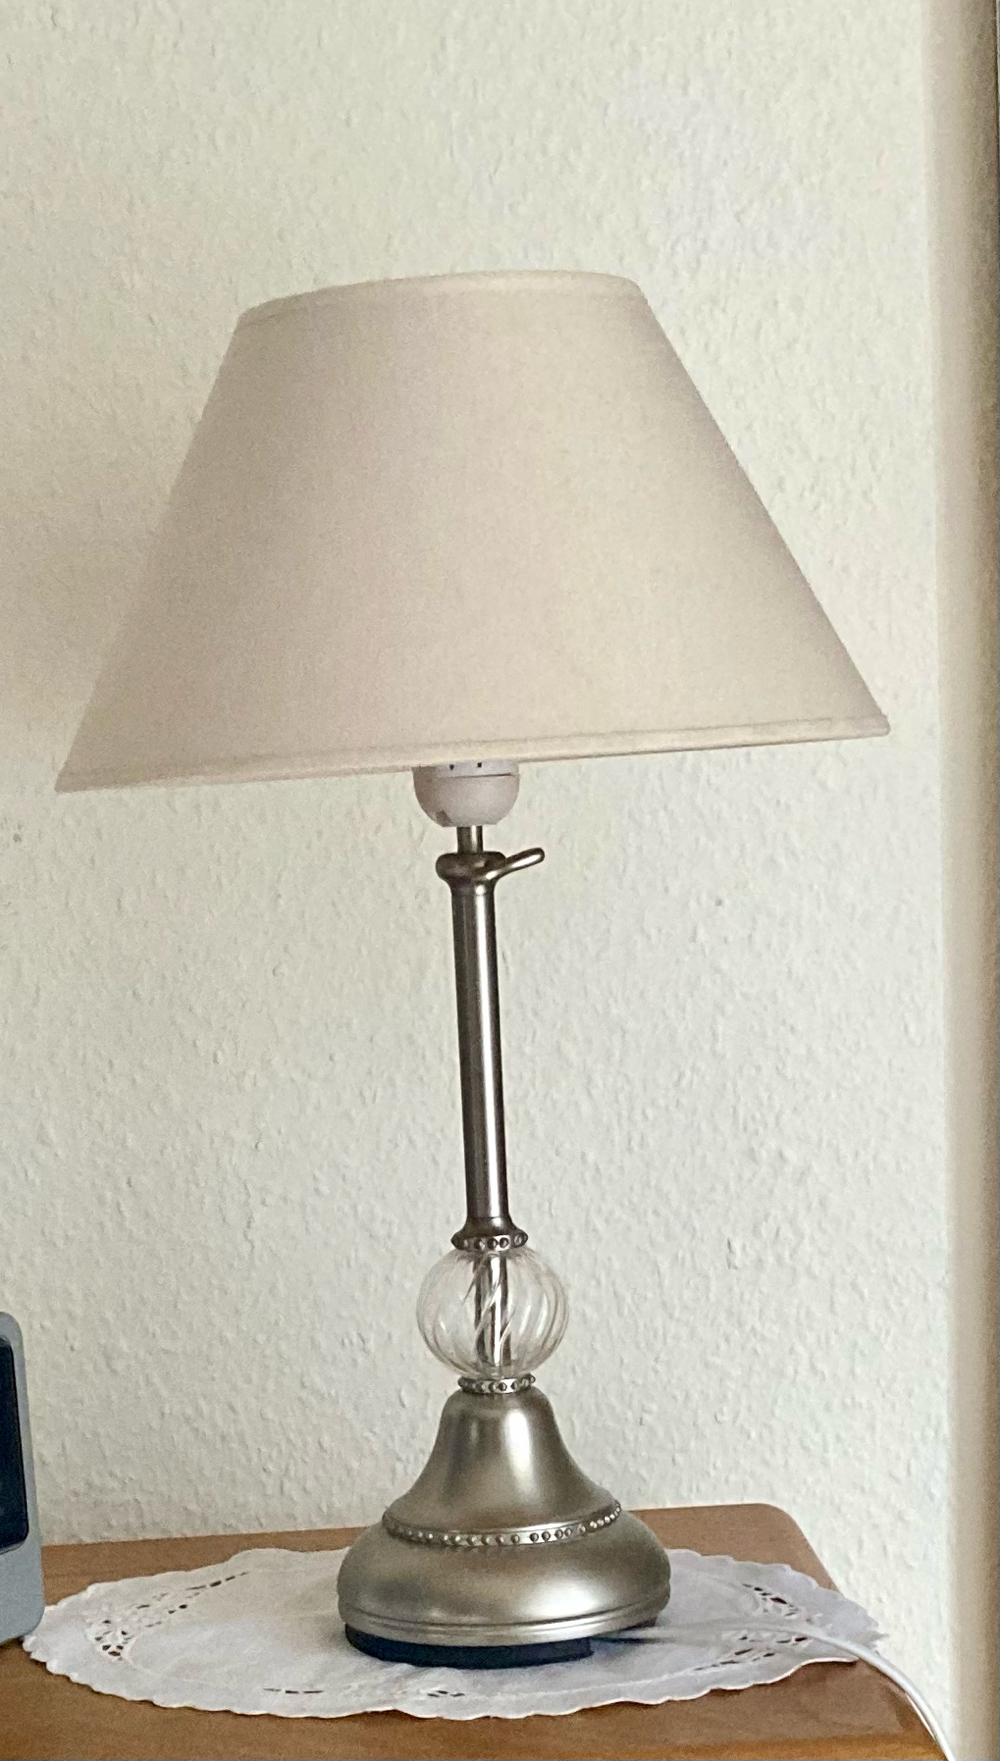 Ikea höhenverstellbare Tischlampe!